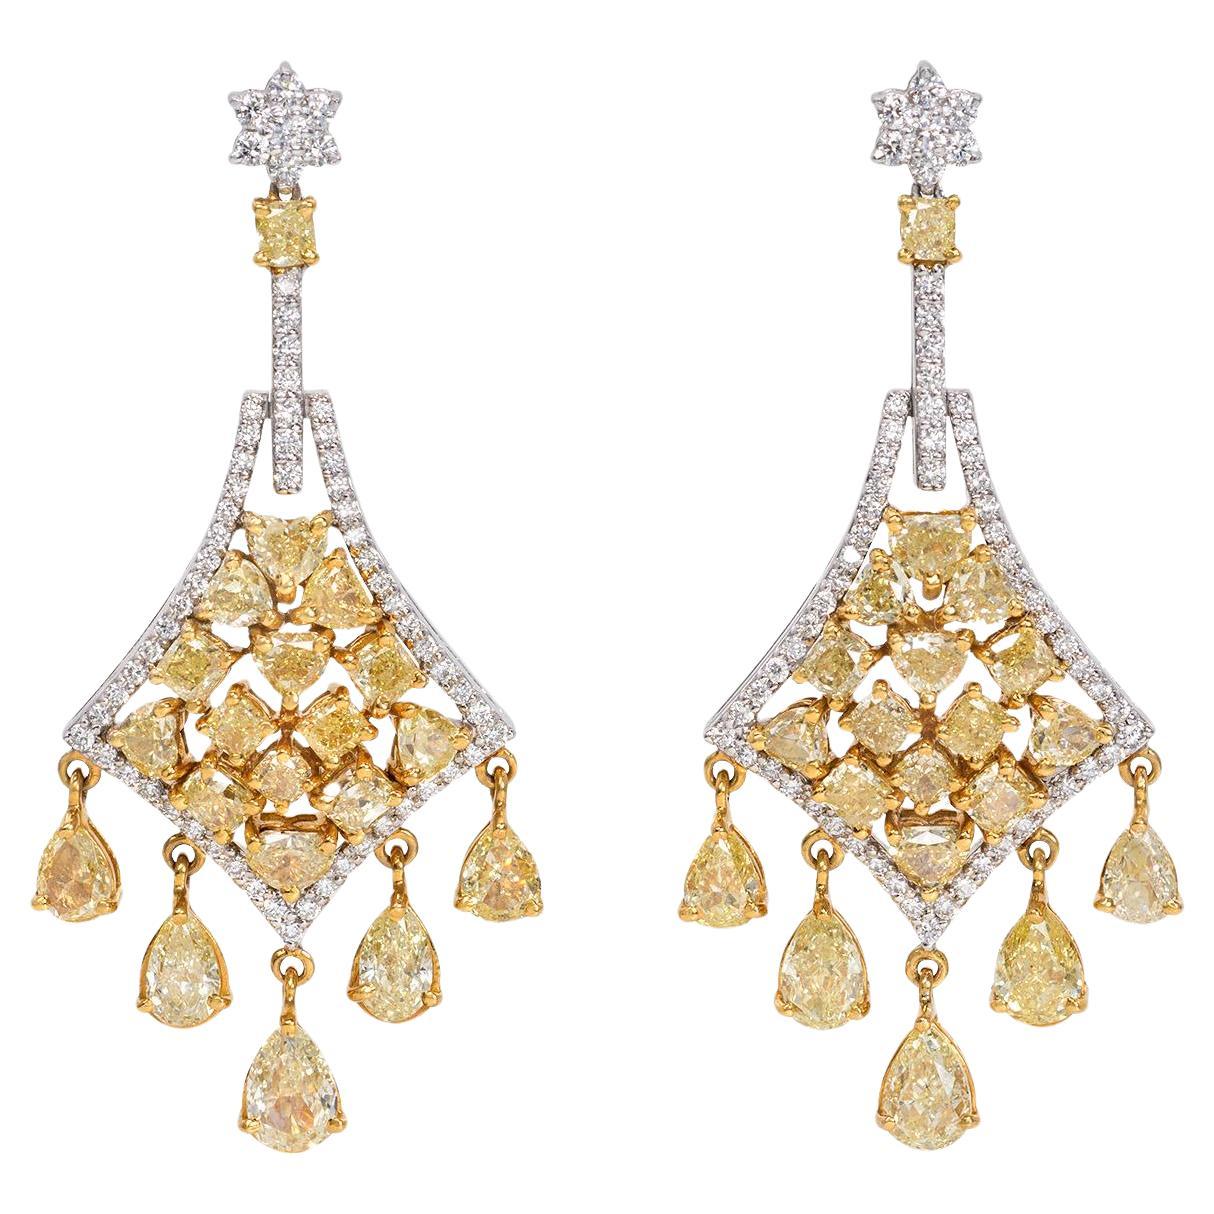 Avize Earrings - 6.81 Carat Yellow Diamond 18K White Gold